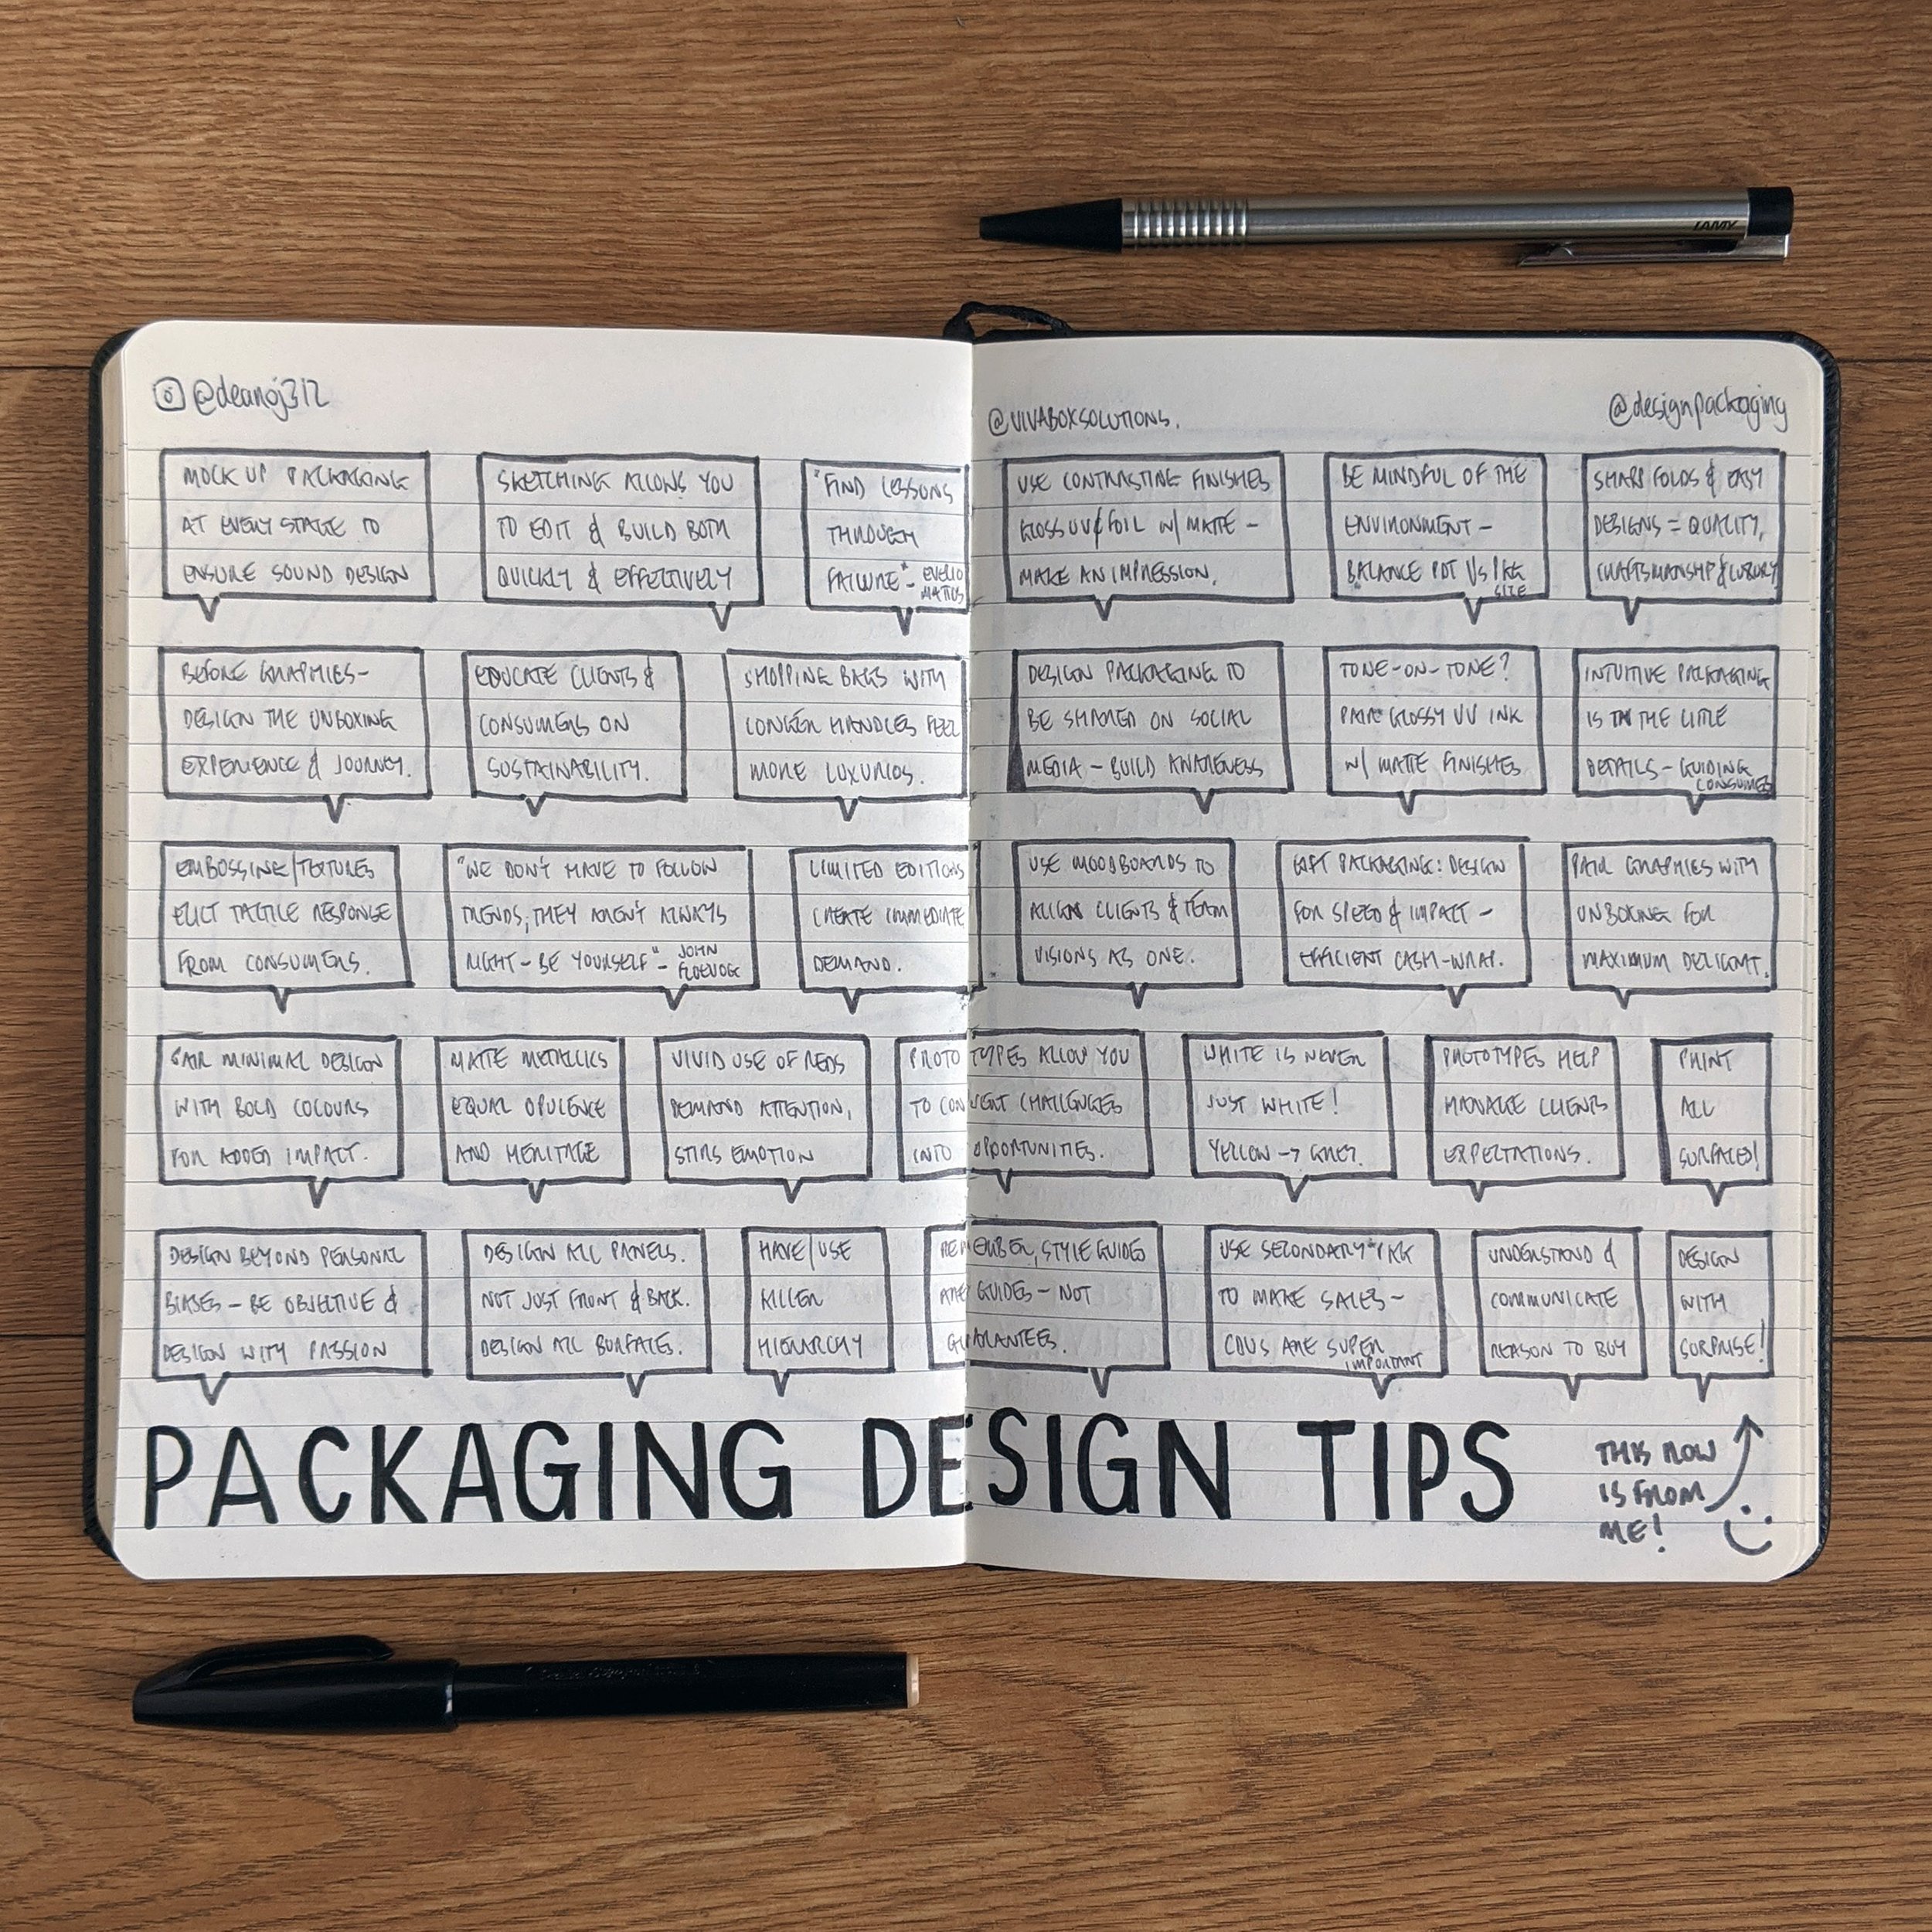 PackagingDesignTips1.jpg